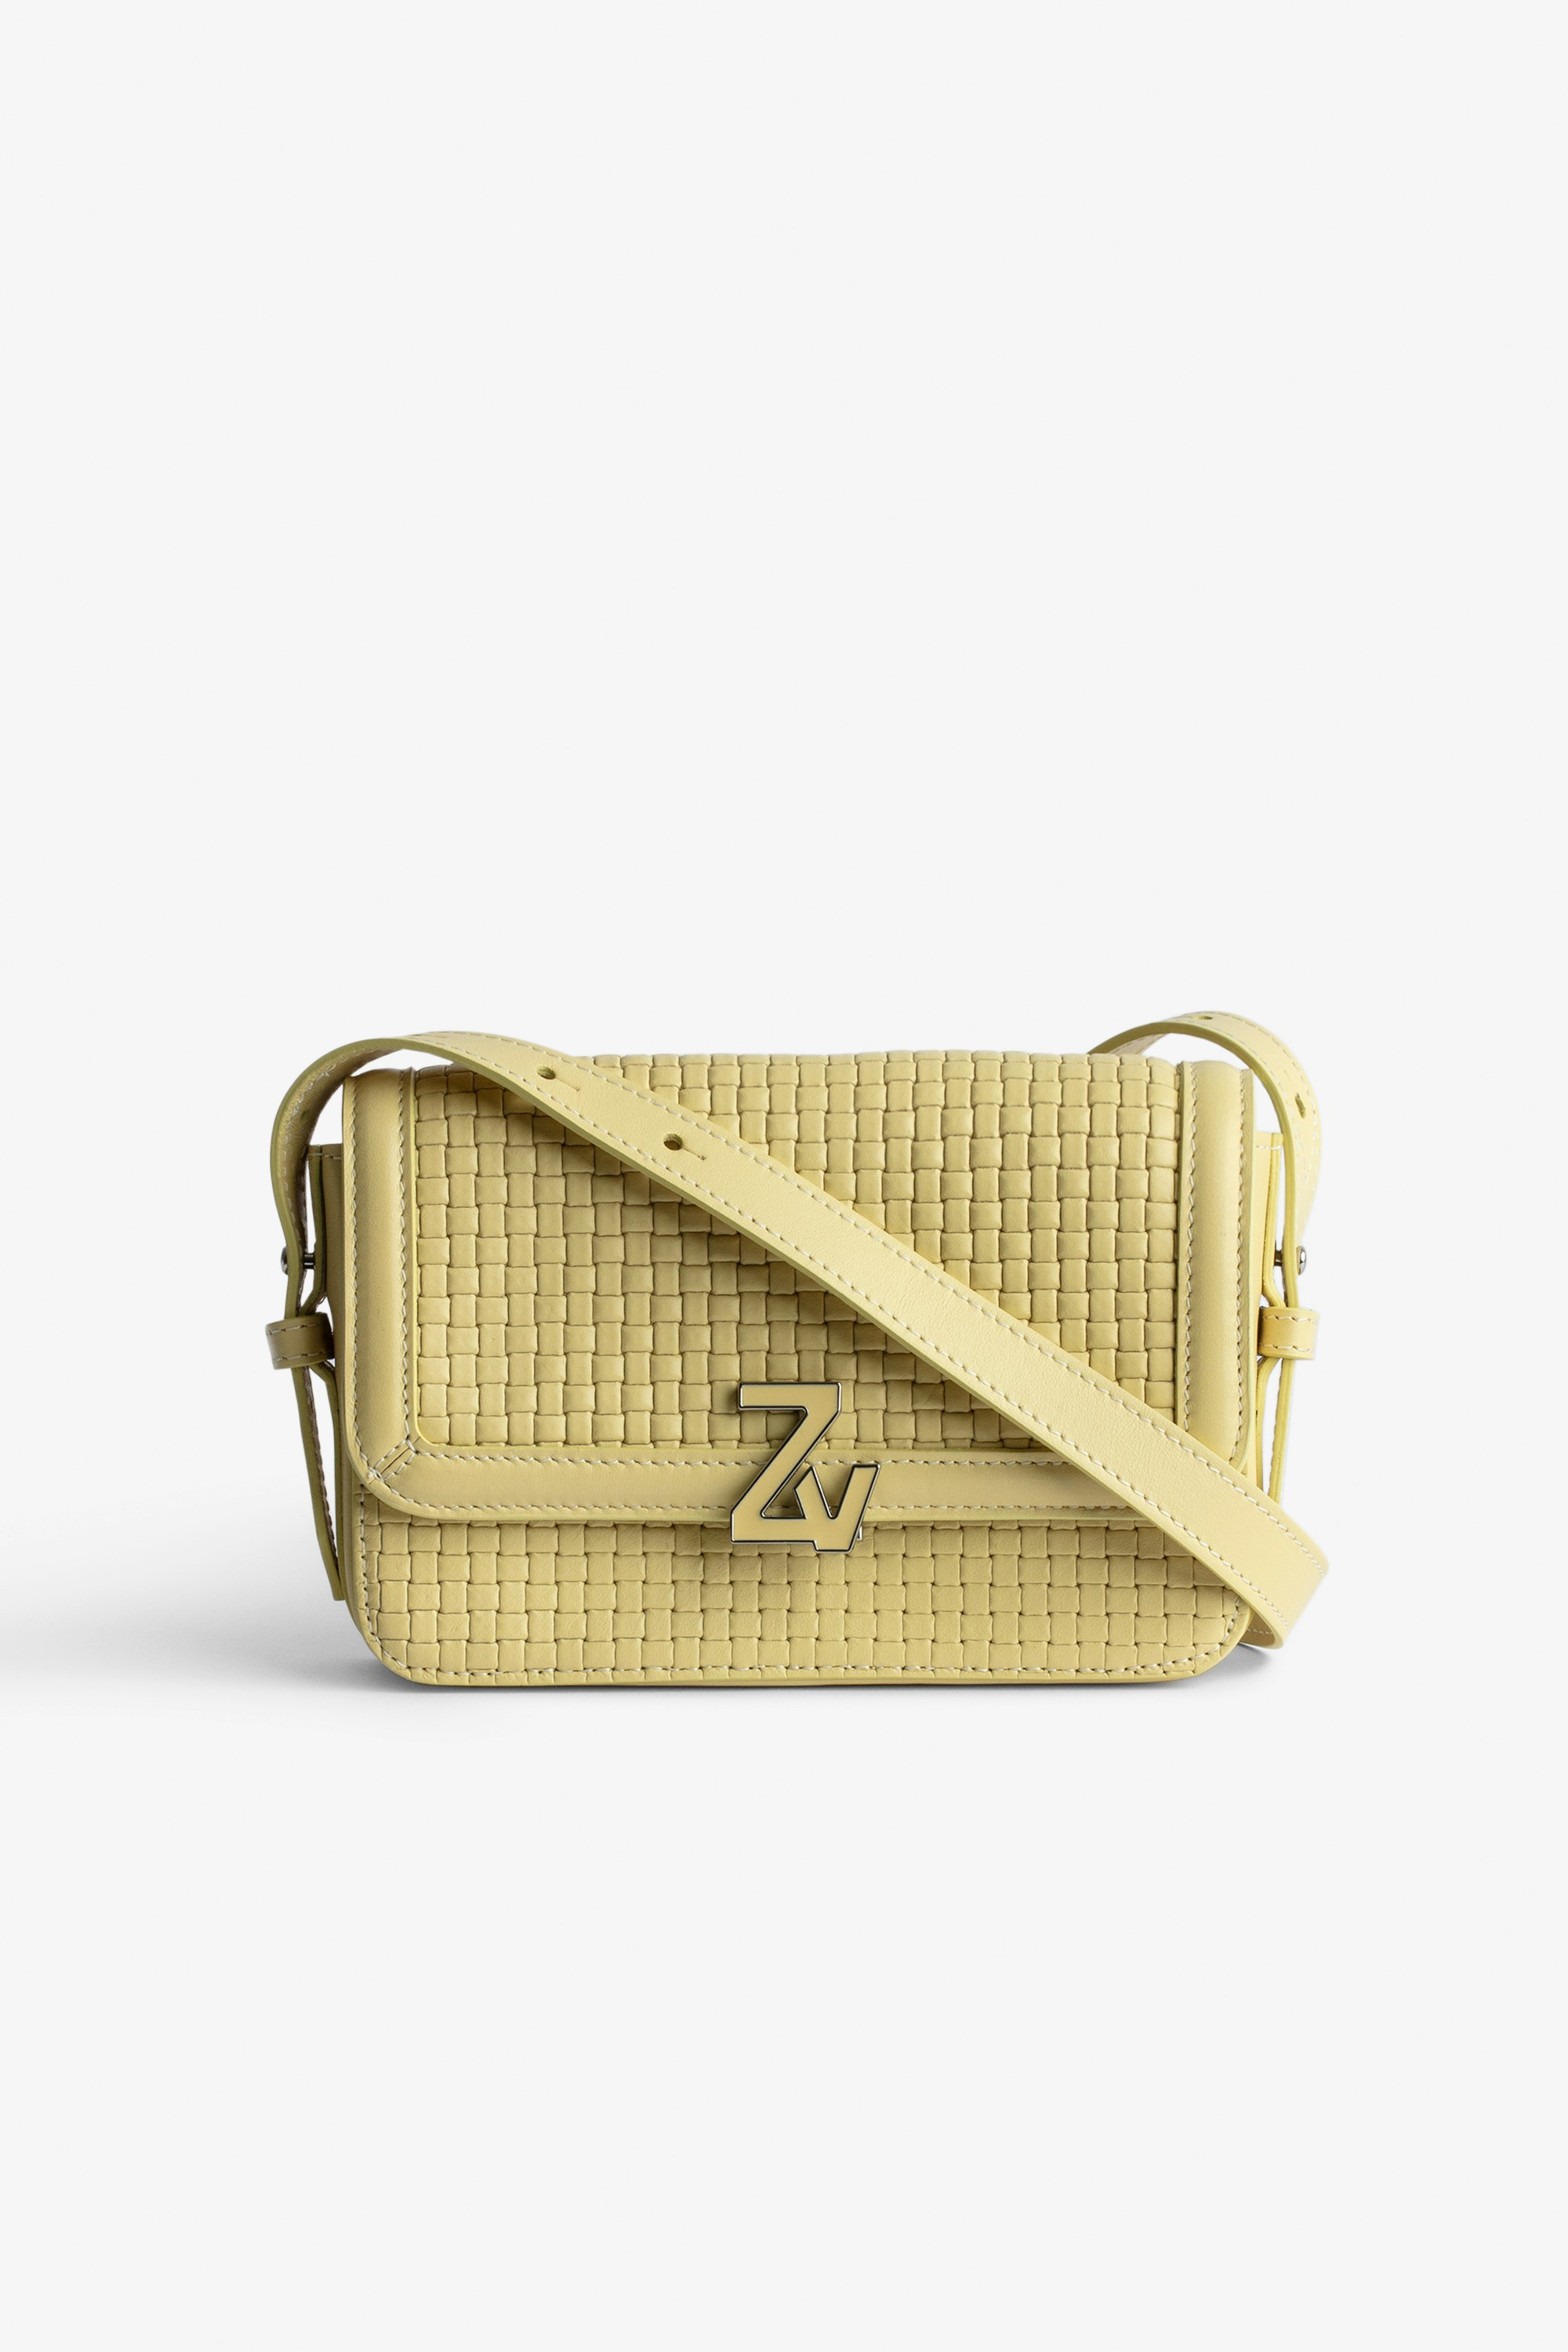 Tasche ZV Initiale Le Mini  Kleine Damen-Handtasche aus geflochtenem Leder in Gelb mit Schulterriemen und ZV-Schließe